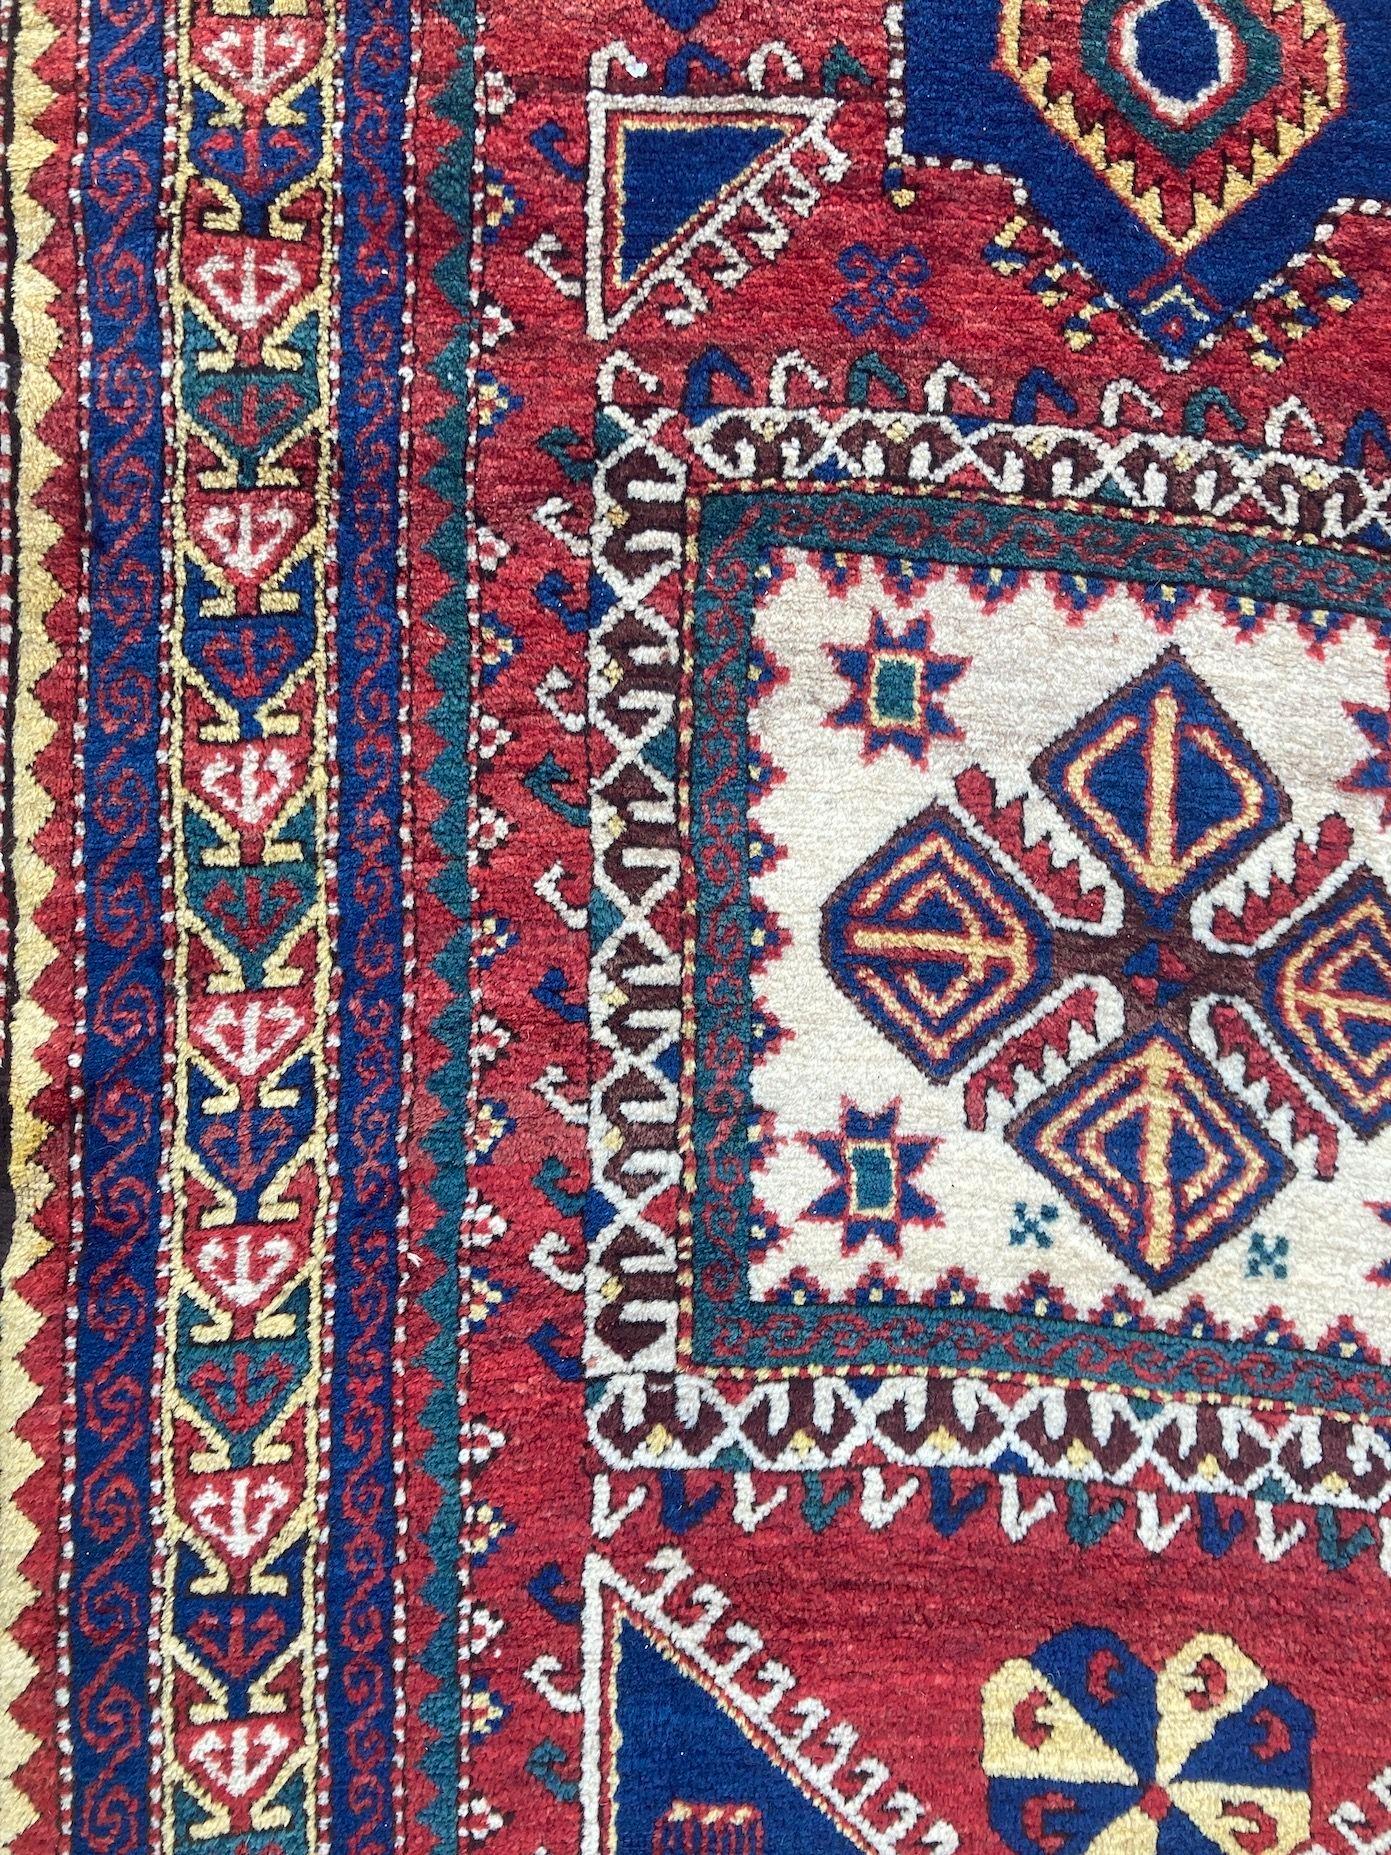 Antique Caucasian Fachralo Kazak Prayer Rug 2.48m x 1.30m For Sale 7